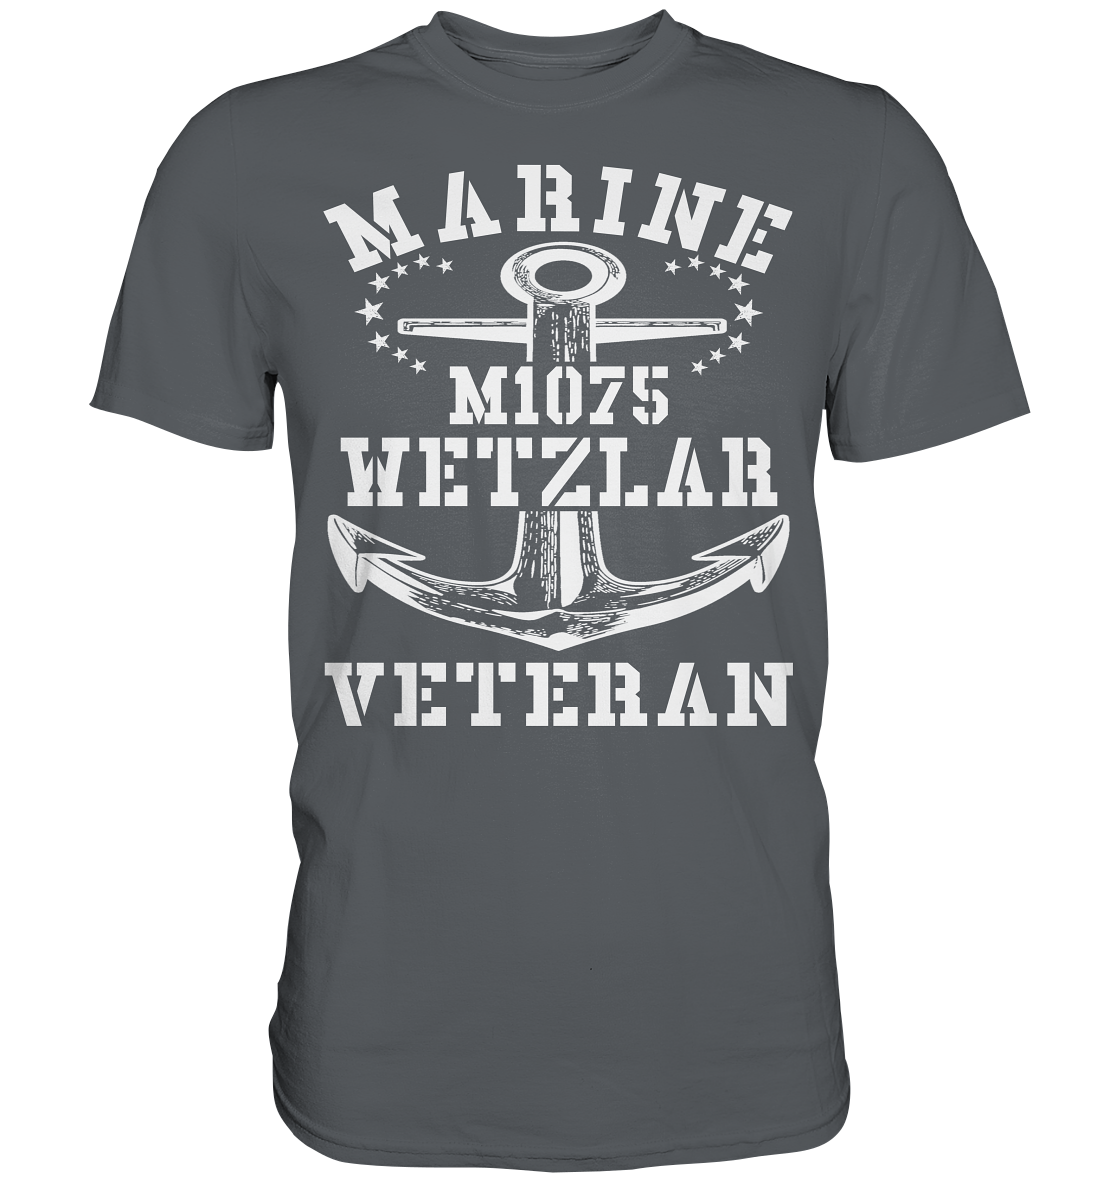 MARINE VETERAN M1075 WETZLAR - Premium Shirt